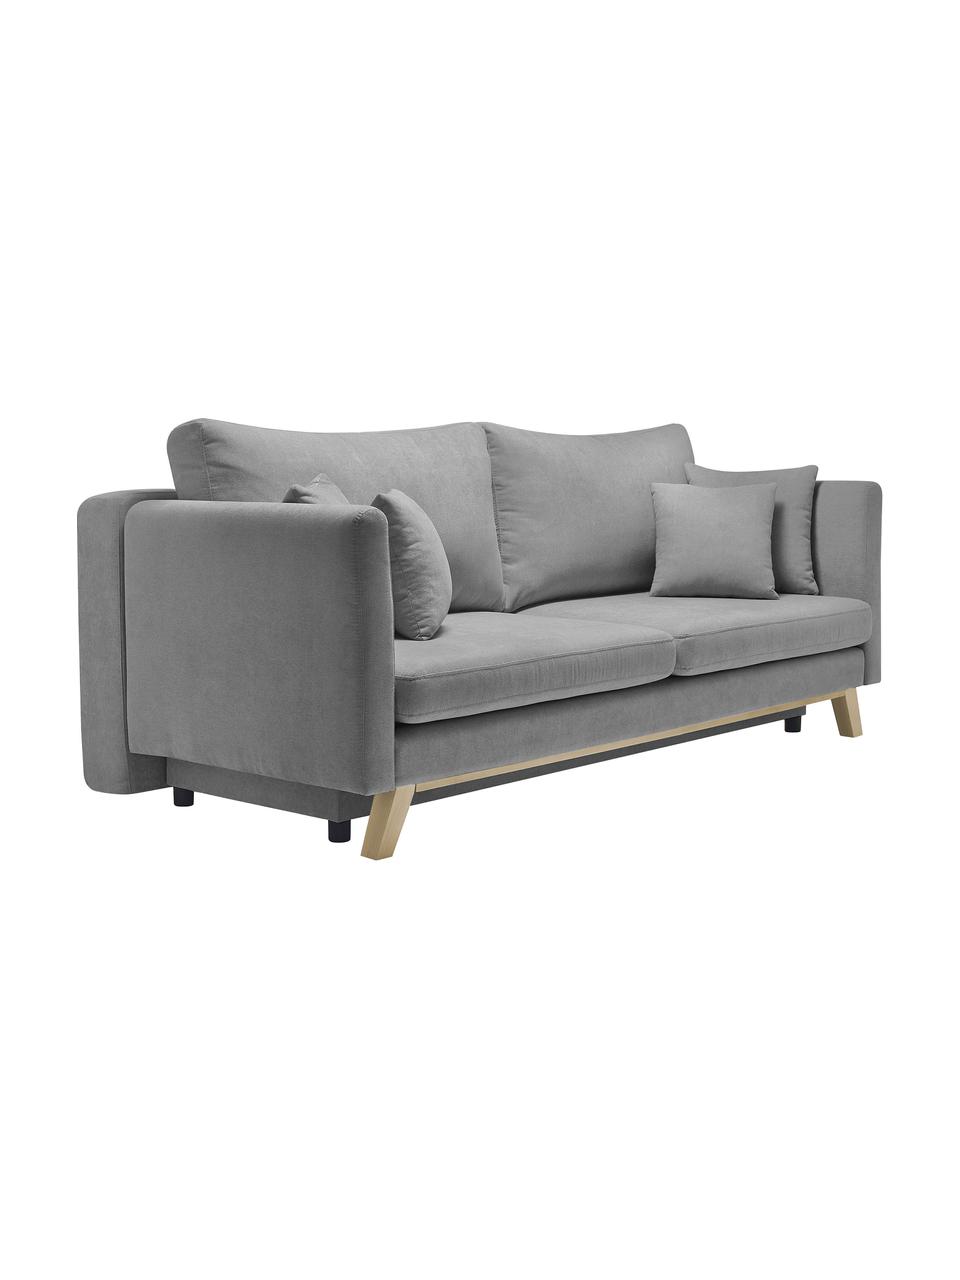 Sofa rozkładana z miejscem do przechowywania Triplo (3-osobowa), Tapicerka: 100% poliester, w dotyku , Nogi: metal lakierowany, Szara tkanina, S 216 x G 105 cm